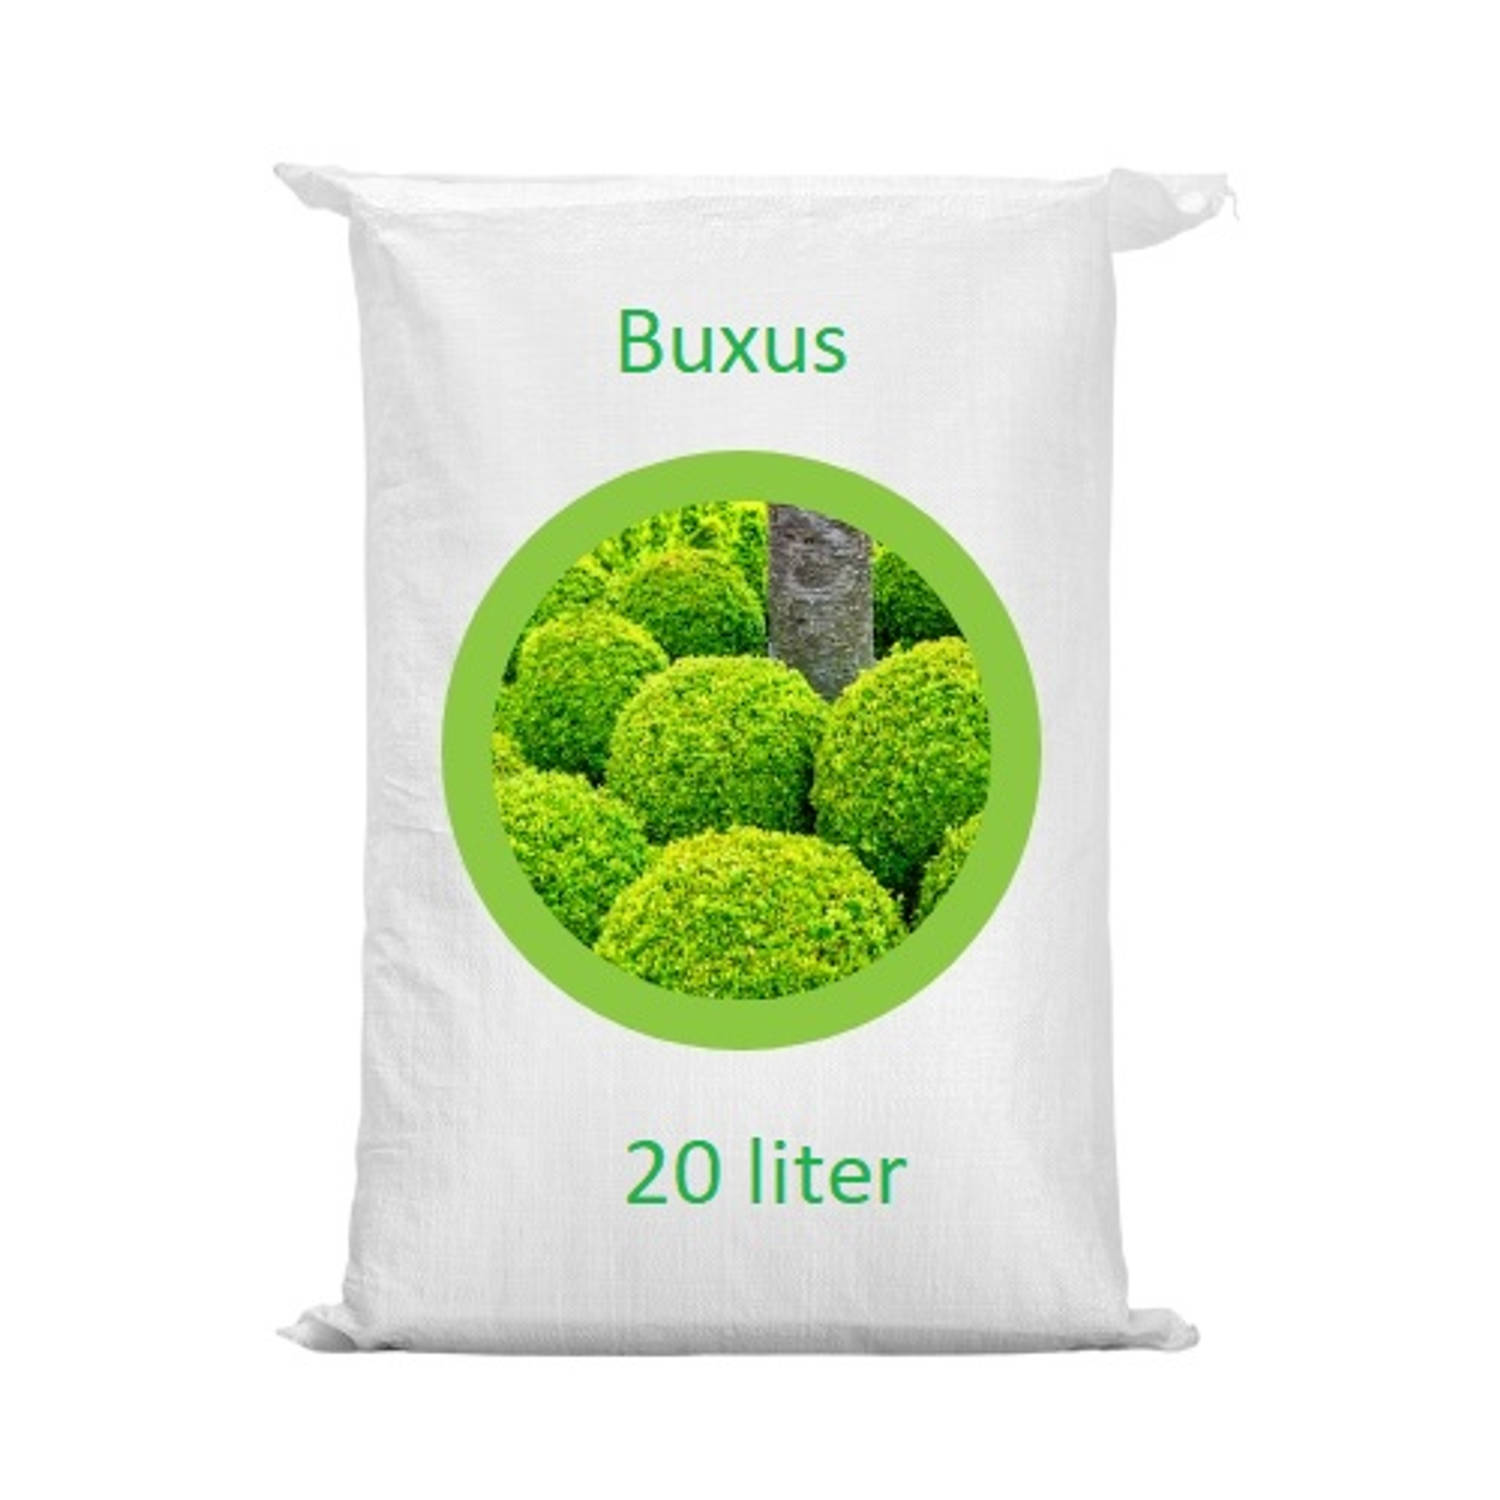 Warentuin Mix - Buxus grond aarde 20 liter